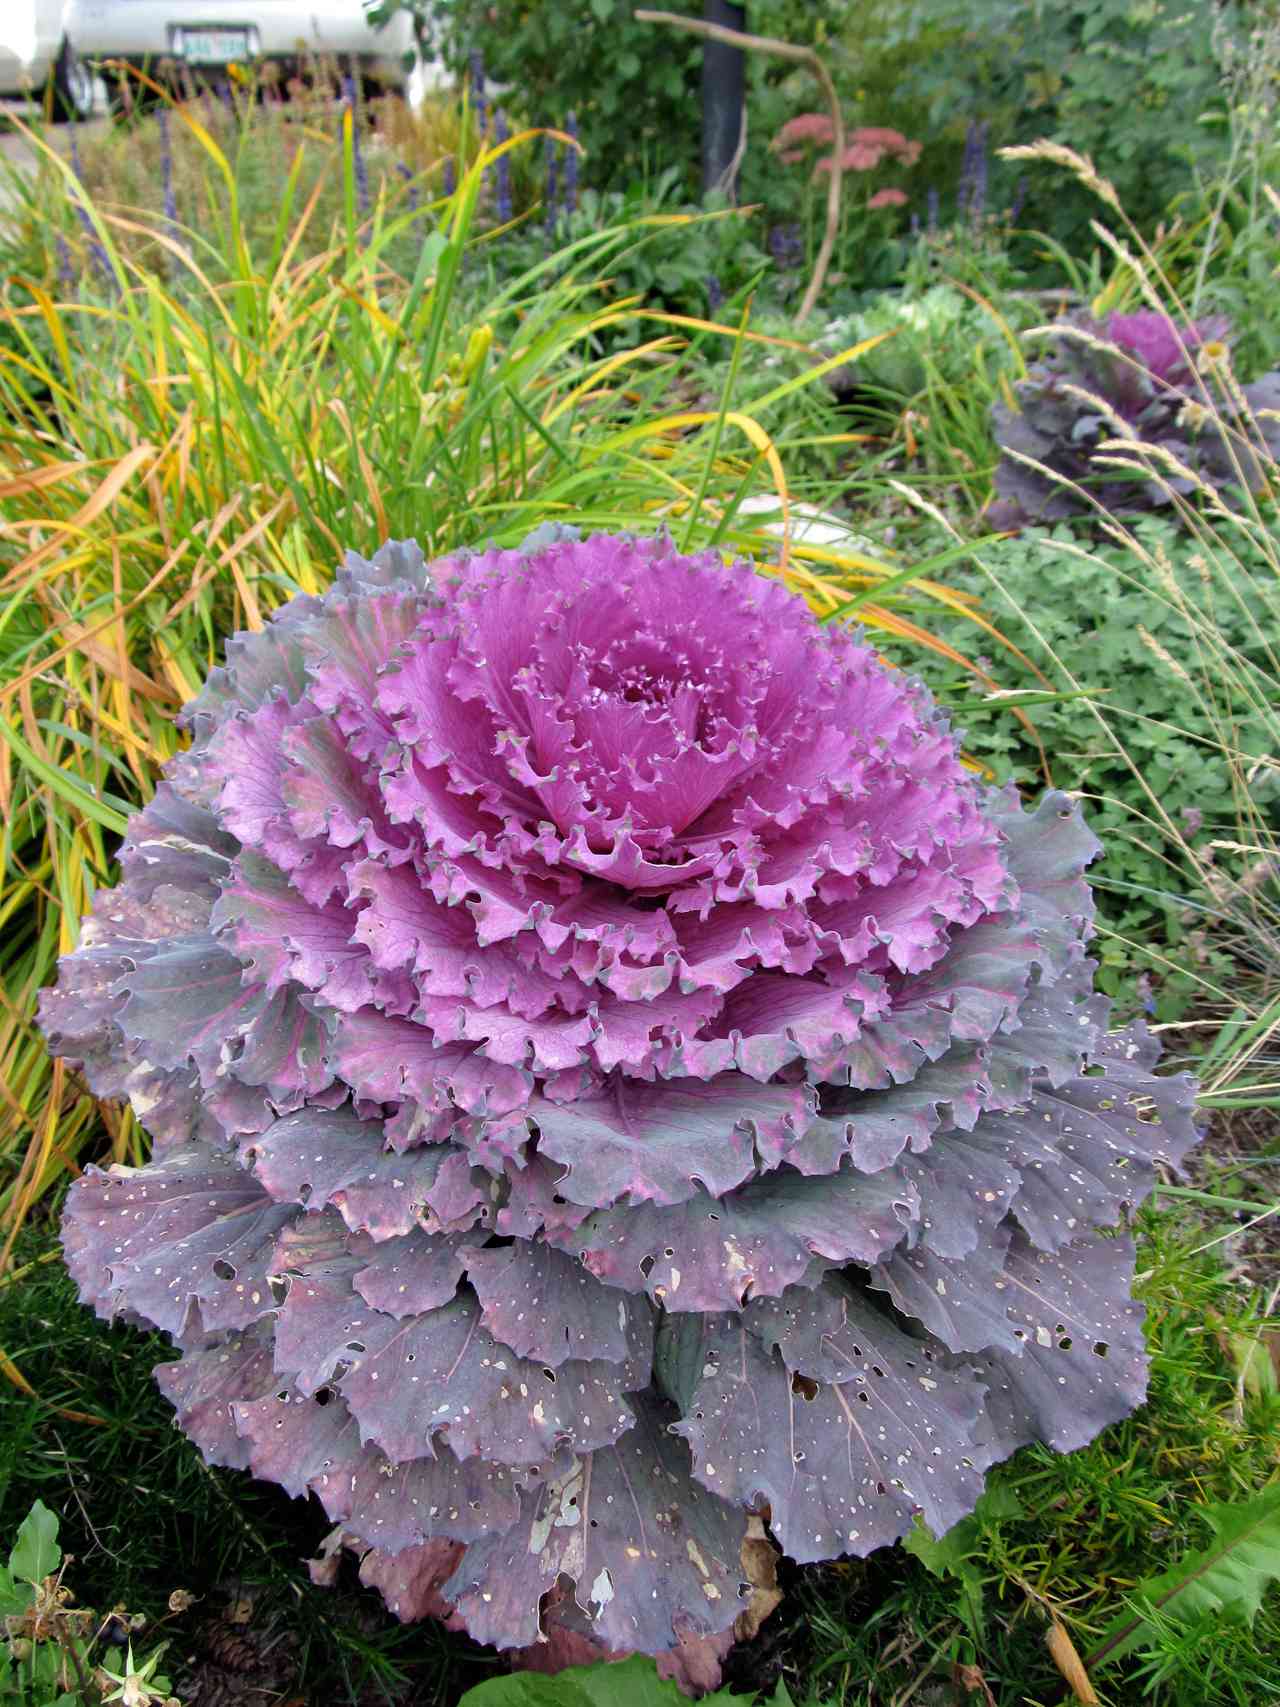 'Osaka Red' cabbage with purple foliage